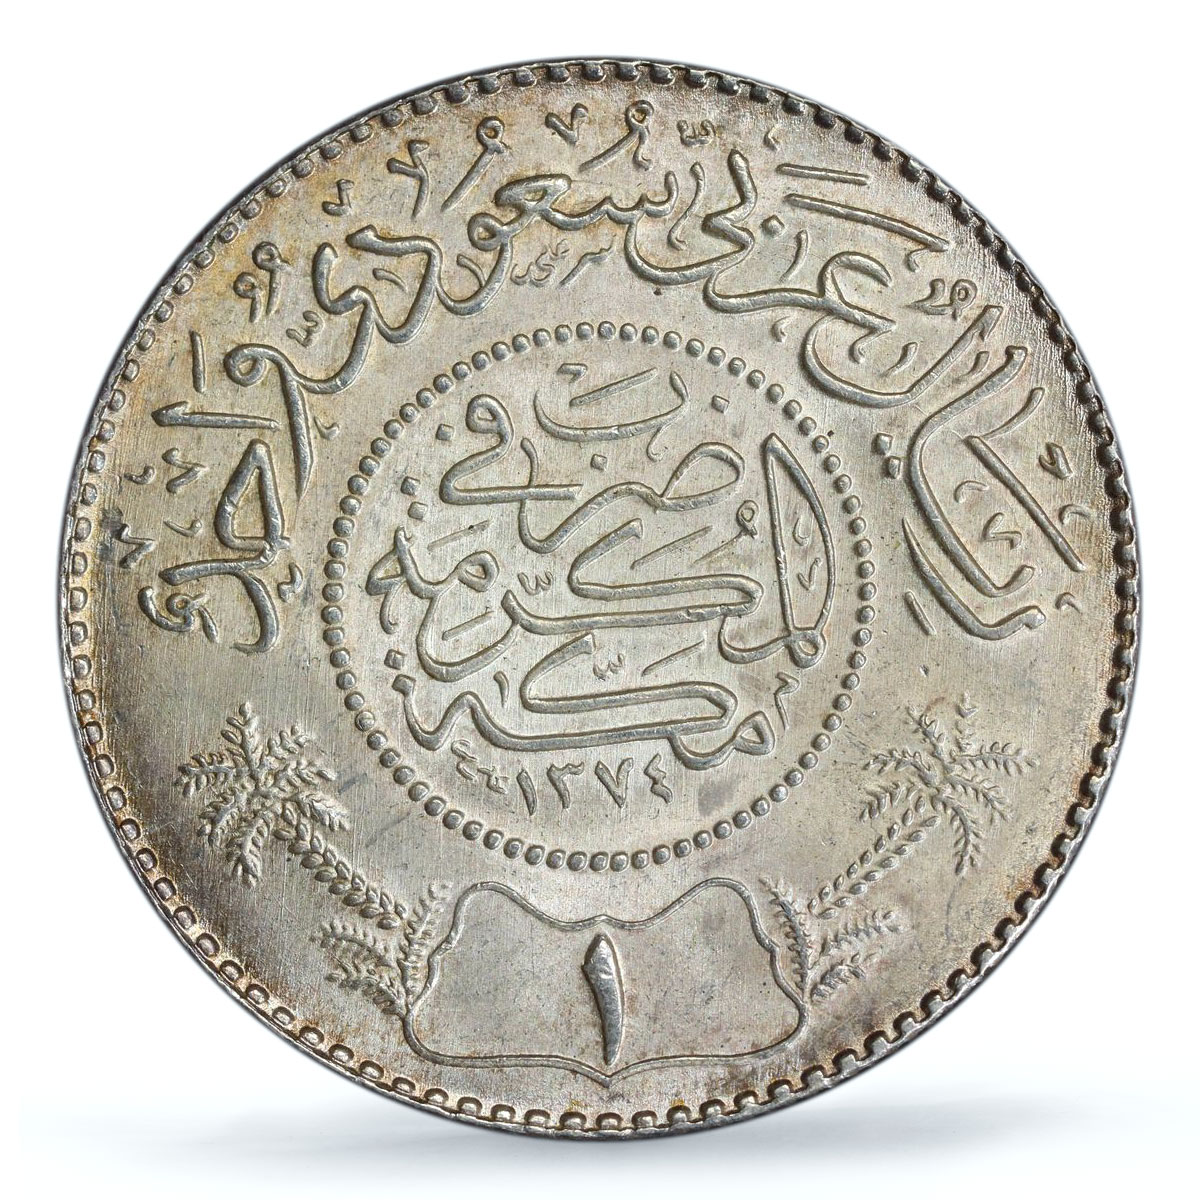 Saudi Arabia 1 riyal Saud bin Abdulaziz Coinage KM-39 MS66 PCGS silver coin 1954